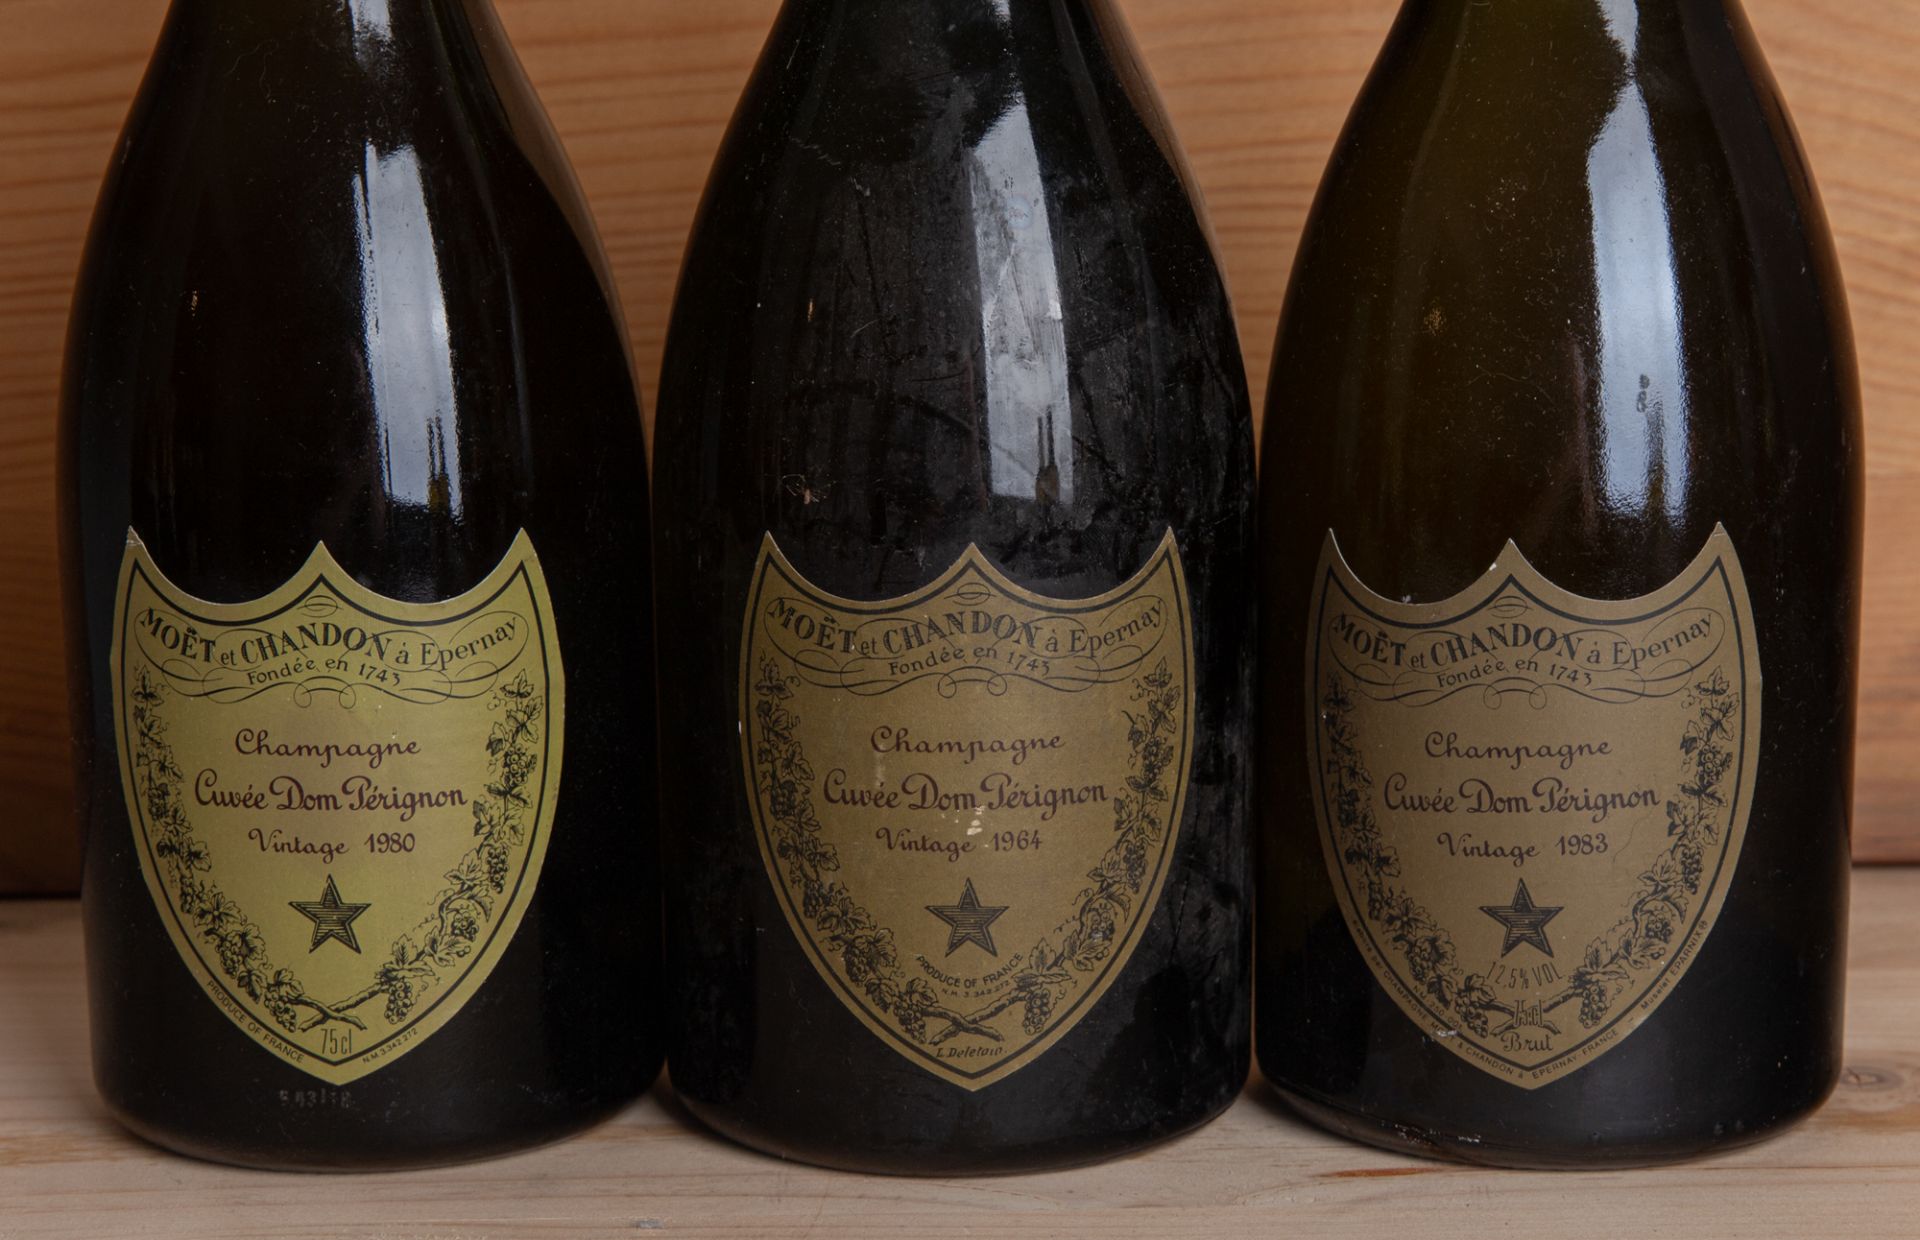 3 Flaschen Champagner Moét et Chandon à Epernay Cuvée Dom Pérignon 1964, 1980 und 1983 - Image 2 of 3